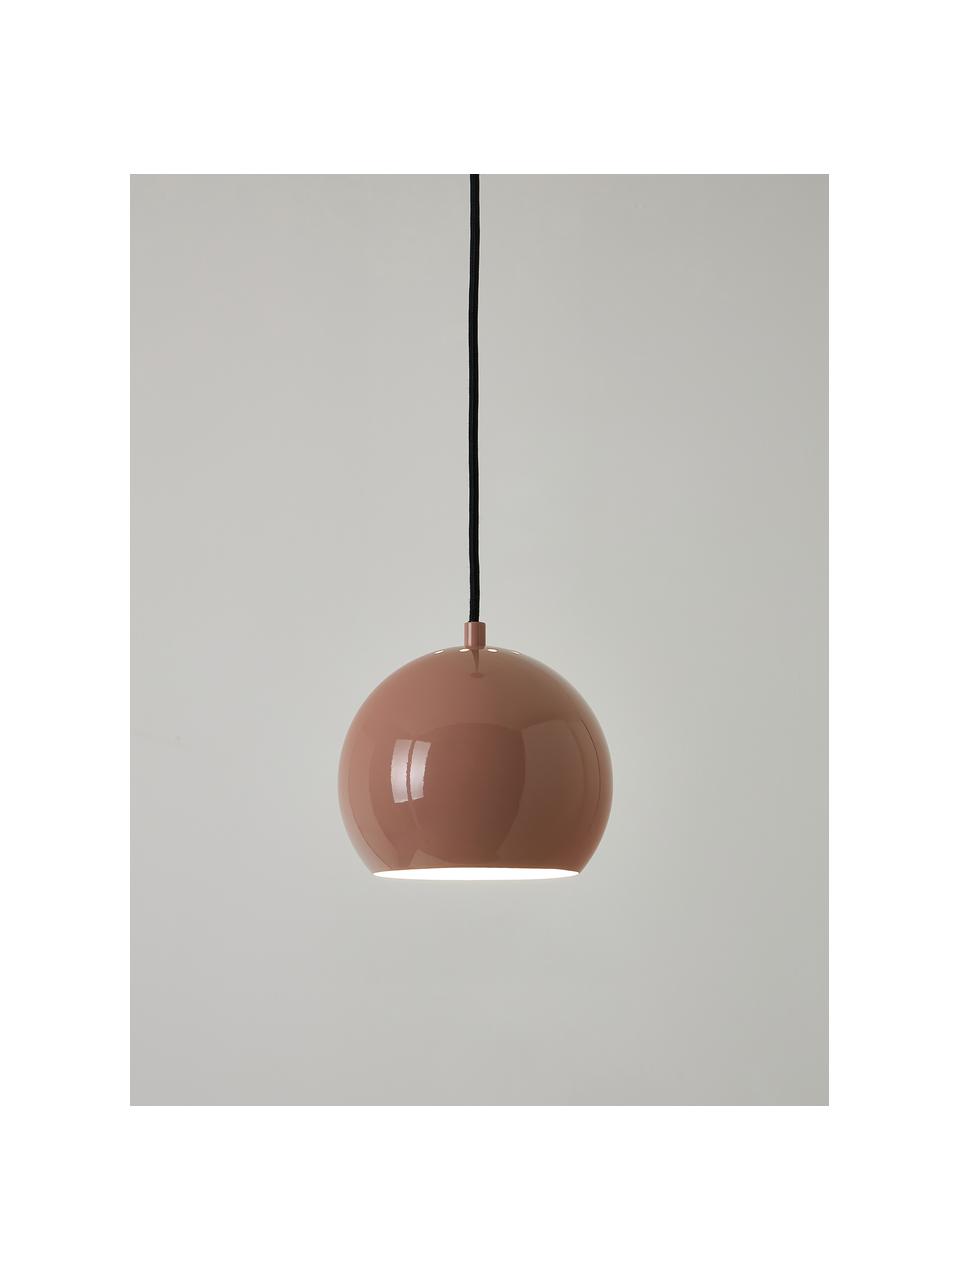 Lampa wisząca Ball, Jasny różowy, Ø 18 x W 16 cm